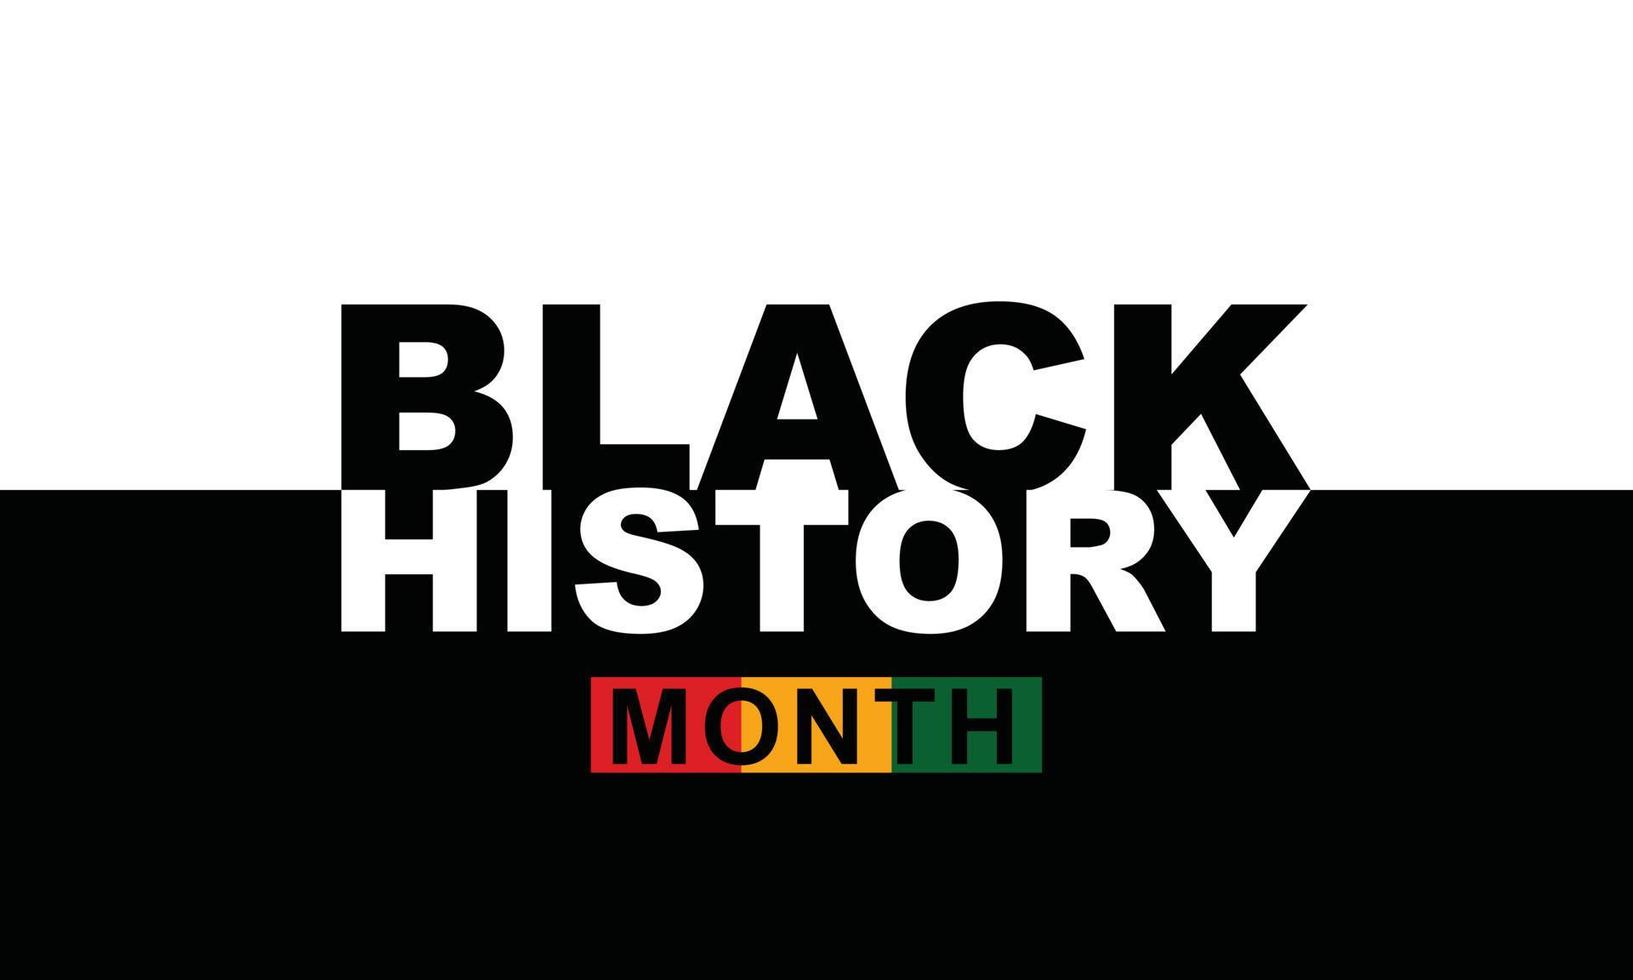 mês da história negra comemorar. ilustração vetorial design gráfico história negra mês vetor